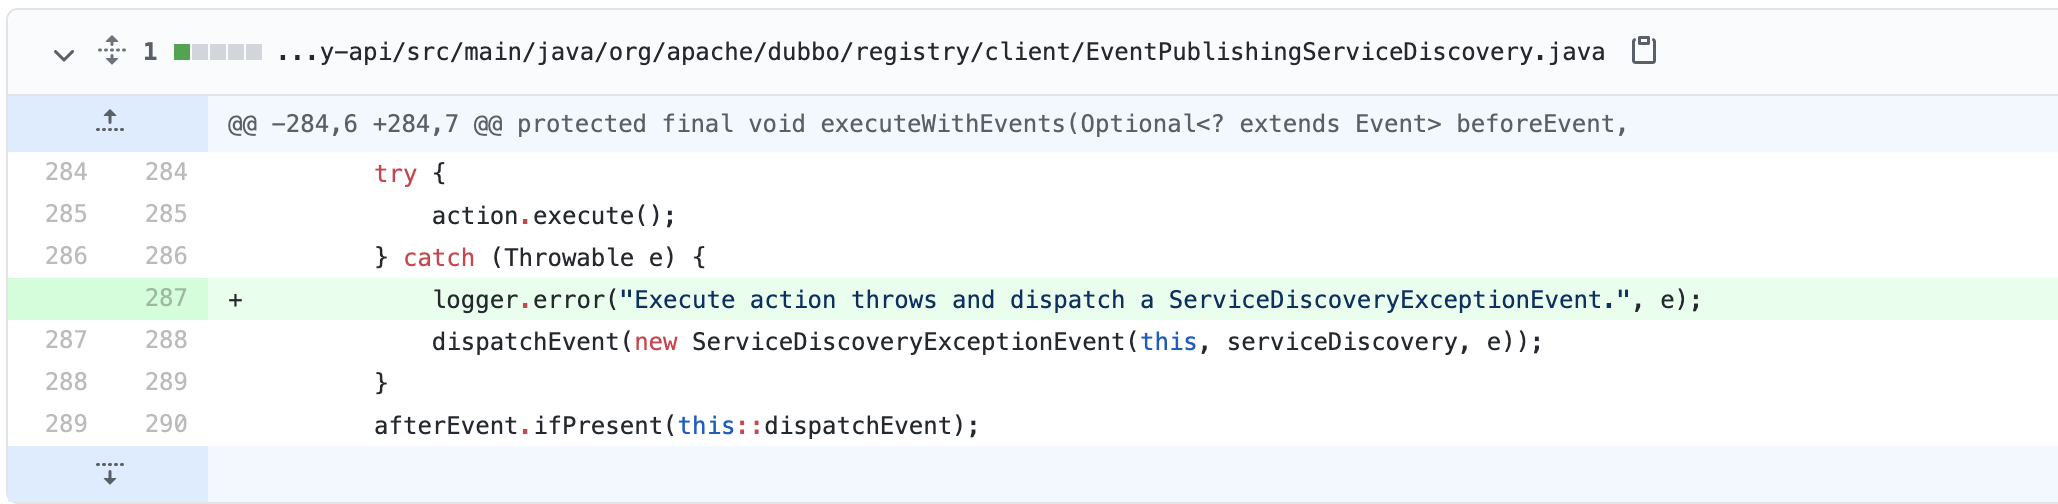 dubbo 2.7应用级服务发现踩坑小记